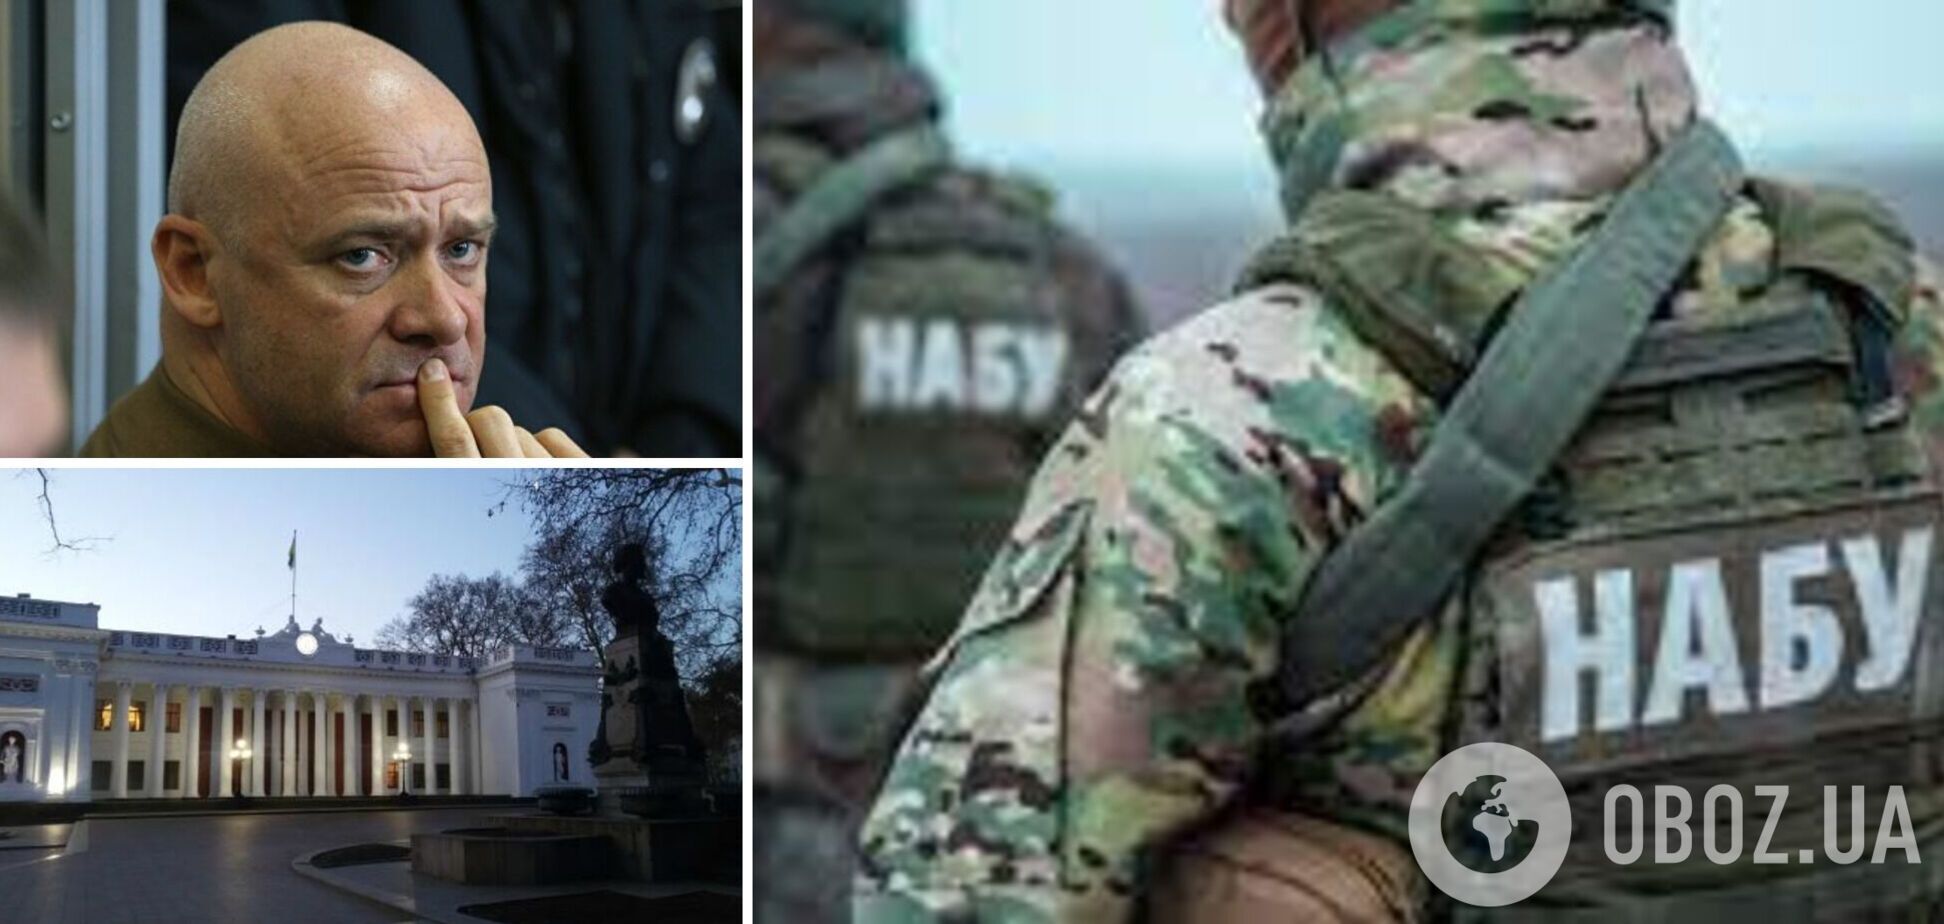 Правоохранители пришли с обысками в одесскую мэрию и к Труханову – СМИ